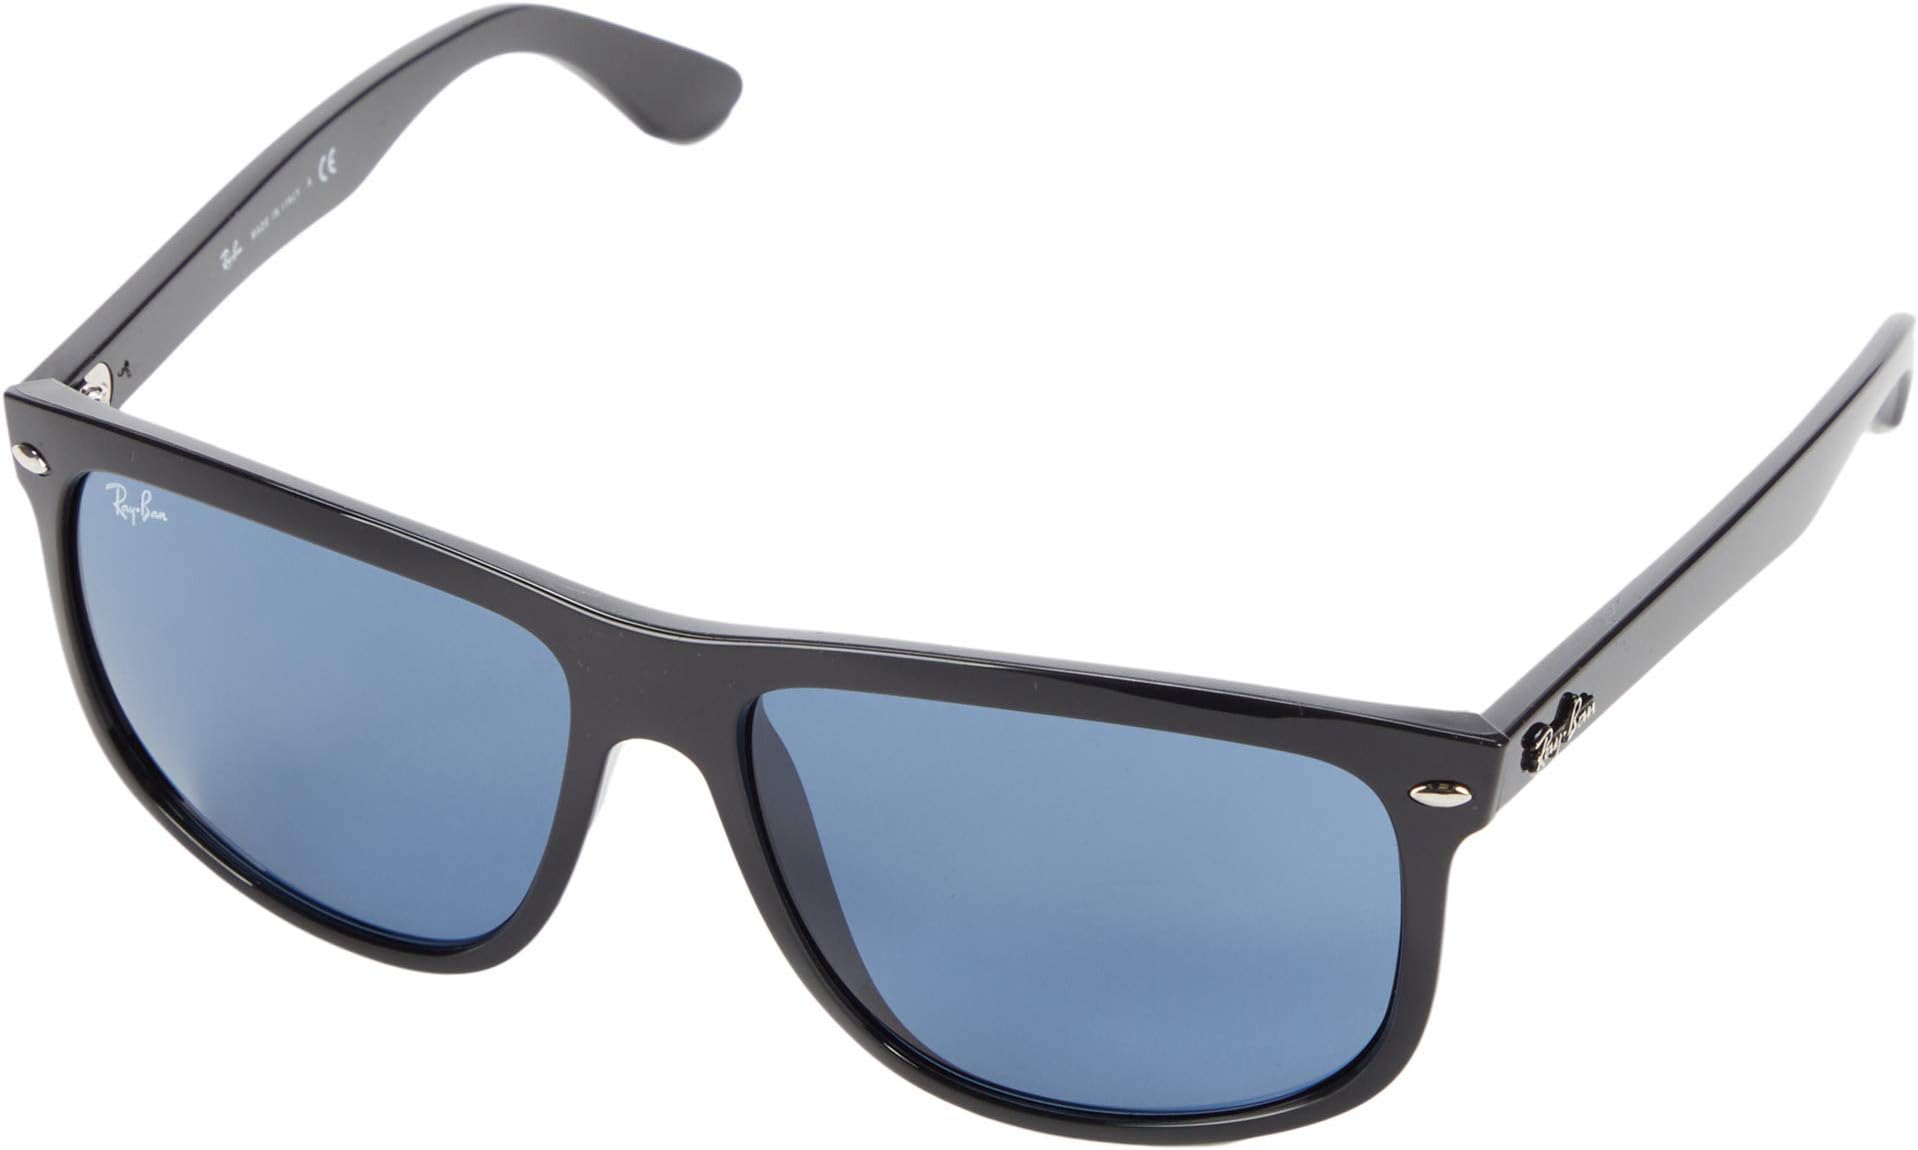 Солнцезащитные очки RB4147 Boyfriend Ray-Ban, цвет Shiny Black Frame/Dark Blue Lens athletiq sunglasses for cycling pink frame blue revo lens